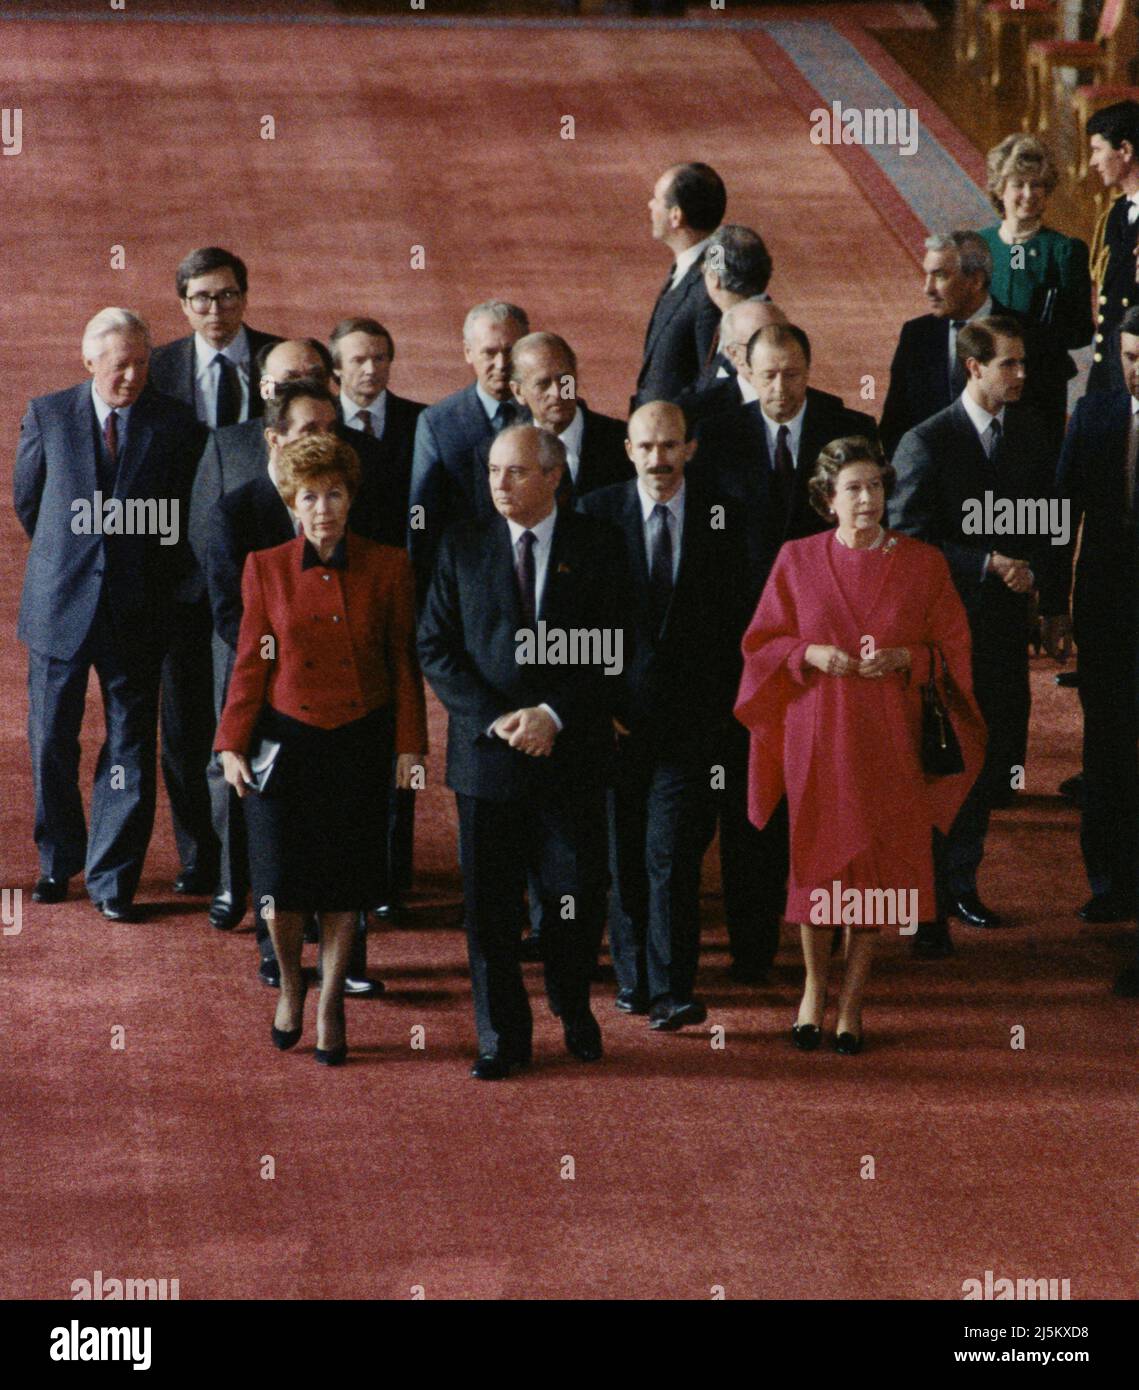 Le dirigeant soviétique MIKHAÏL GORBATCHEV et la femme Raisa rencontrent la reine Elisabeth II au château de Windsor lors de la visite d'État en Angleterre 1988 Banque D'Images